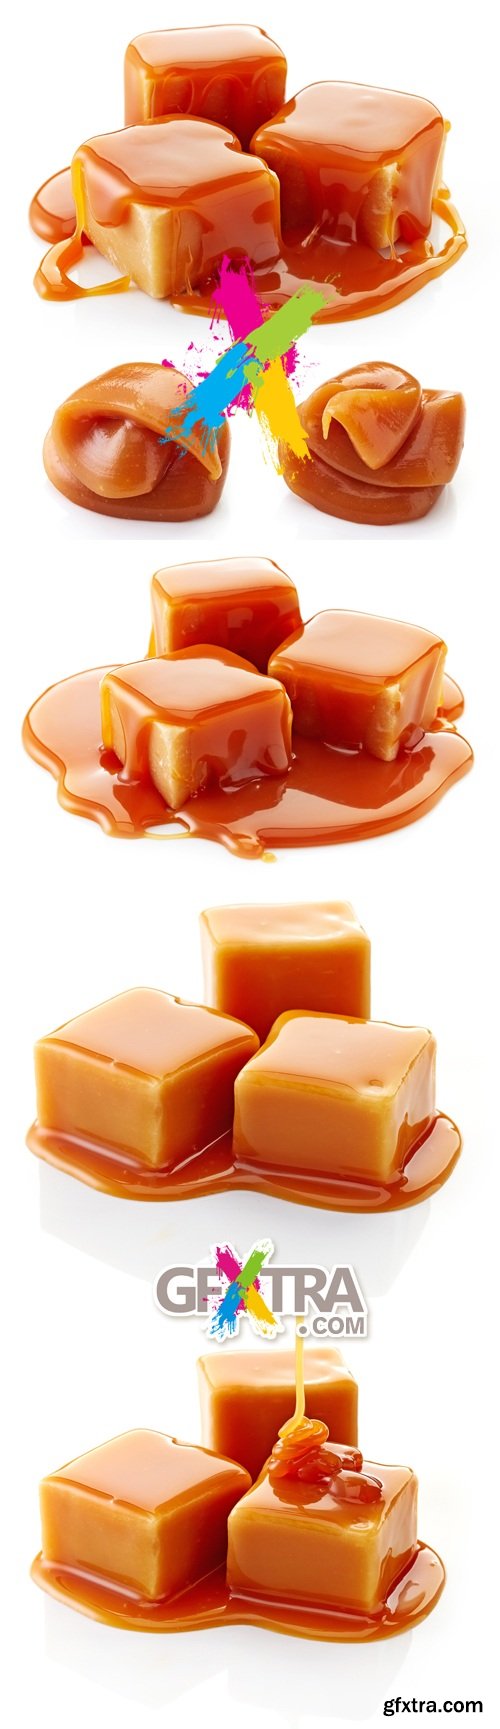 Stock Photo - Caramel Candies & Caramel Sauce